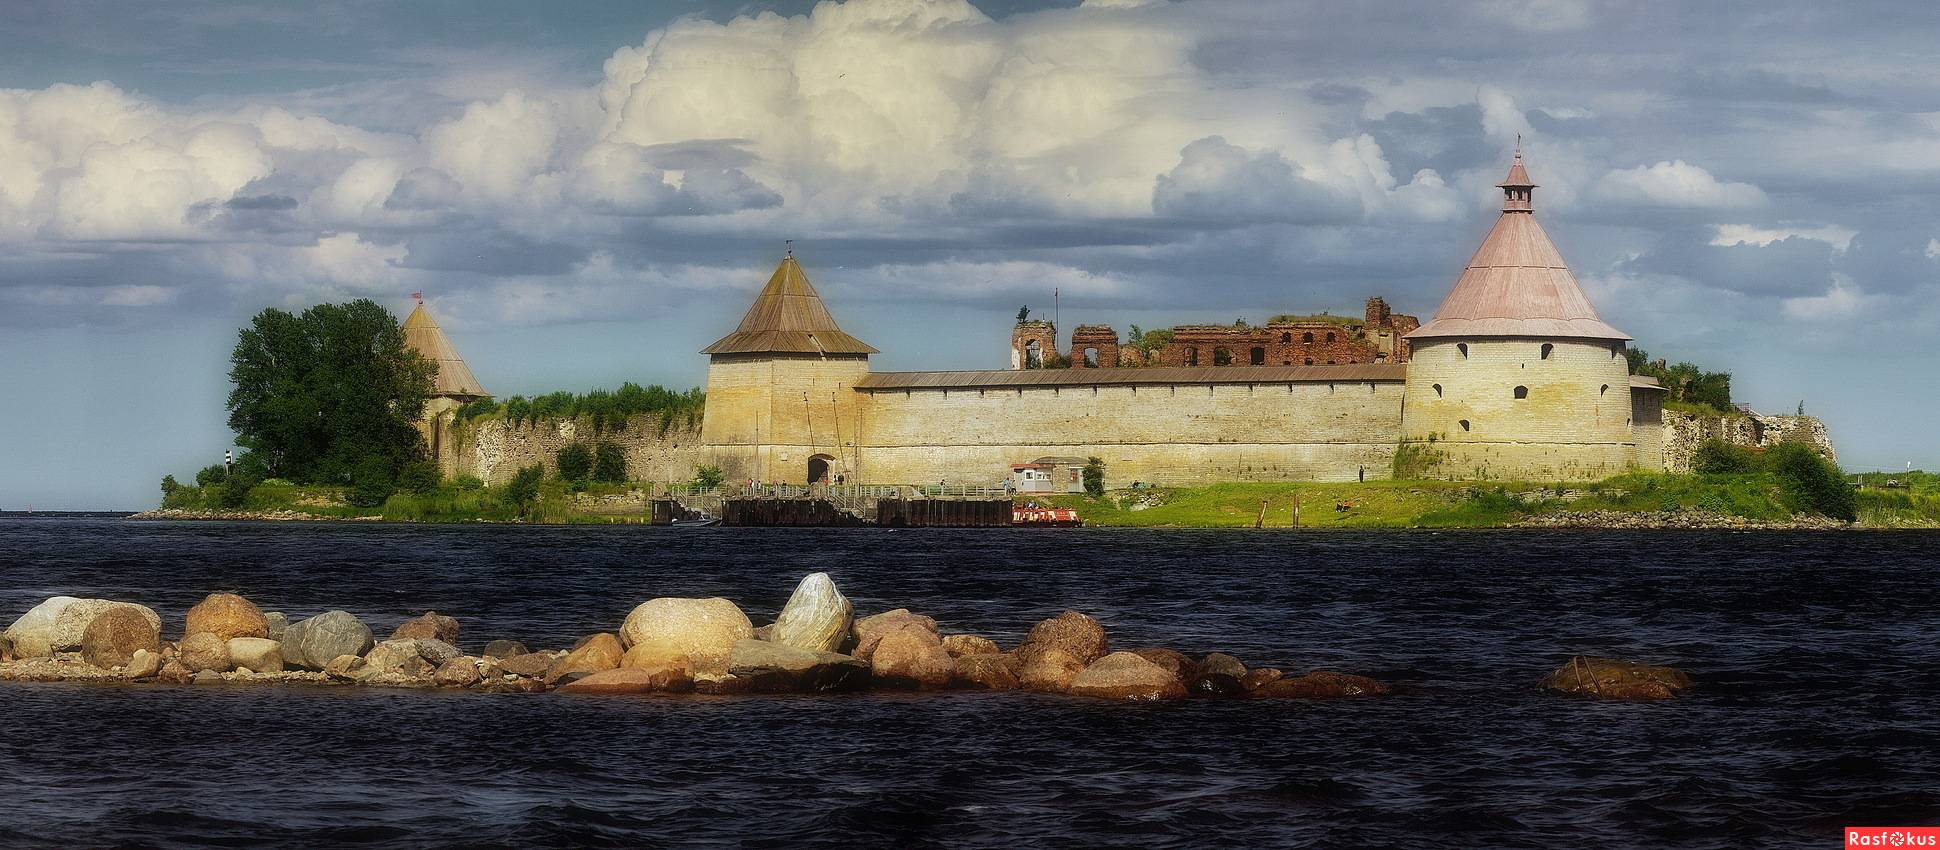 Страшное прошлое орешка: какие истории хранит древняя крепость